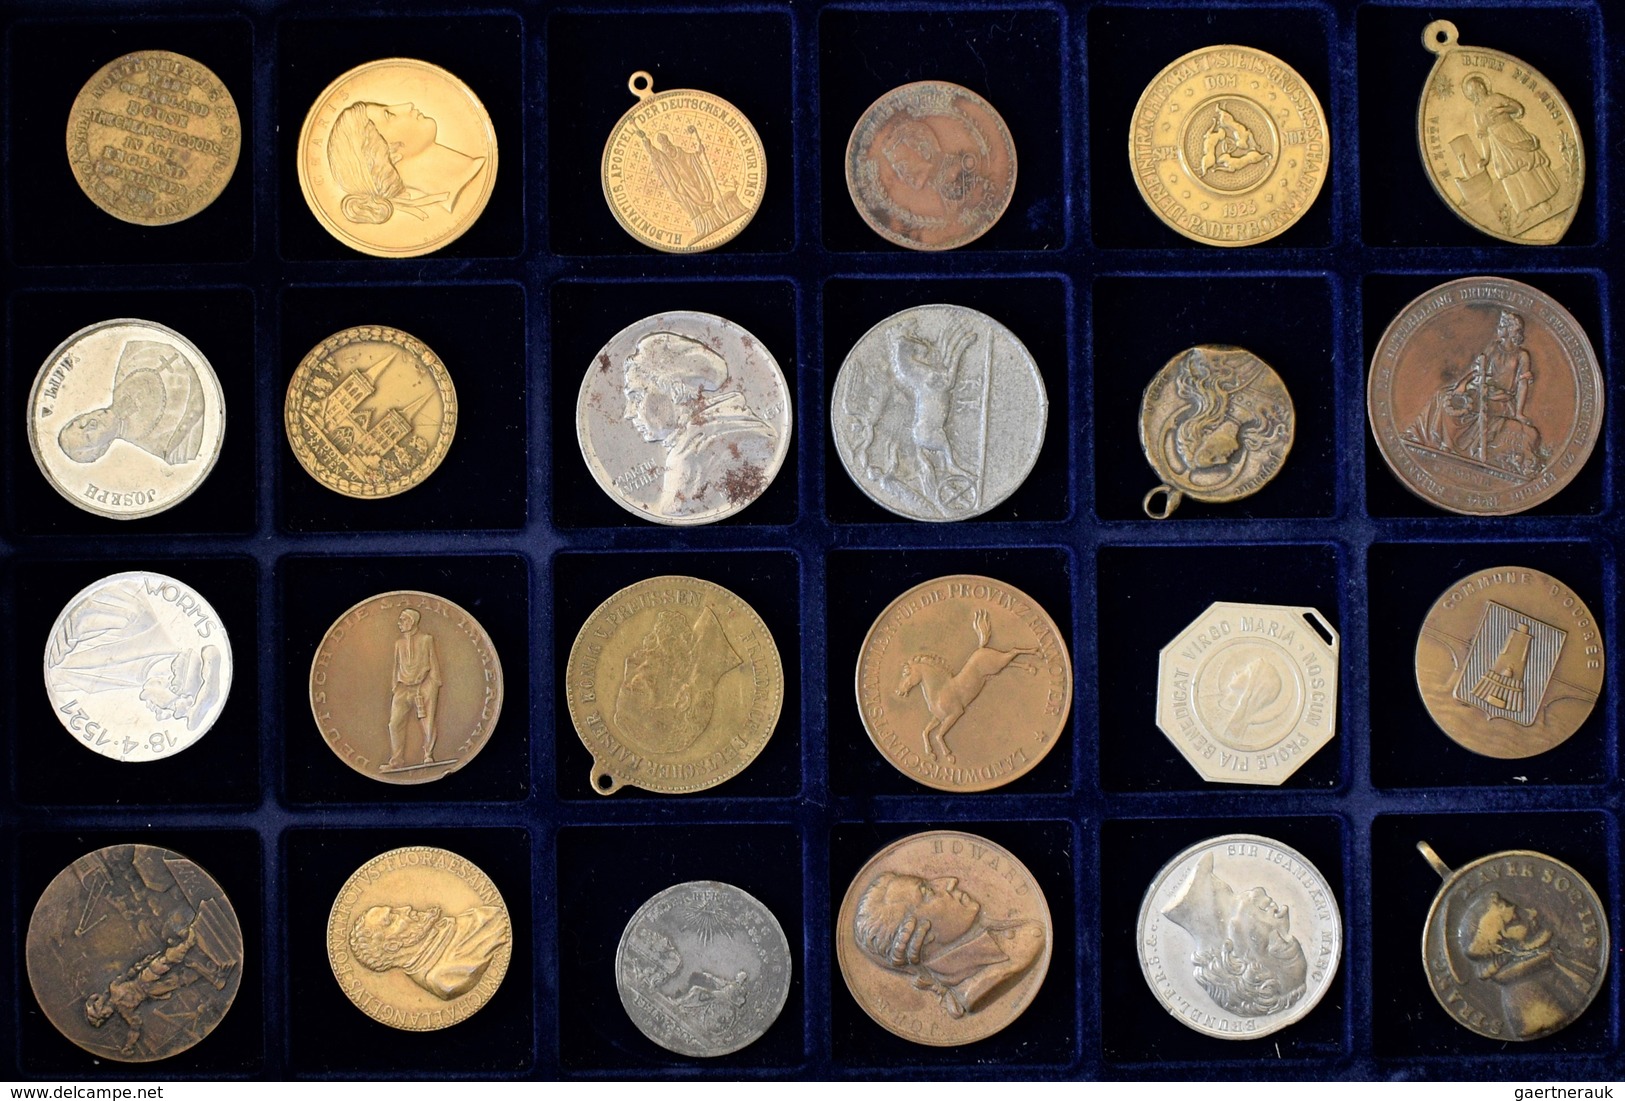 Medaillen alle Welt: Anspruchsvolles Konvolut von circa 215 deutschen und ausländischen Medaillen un